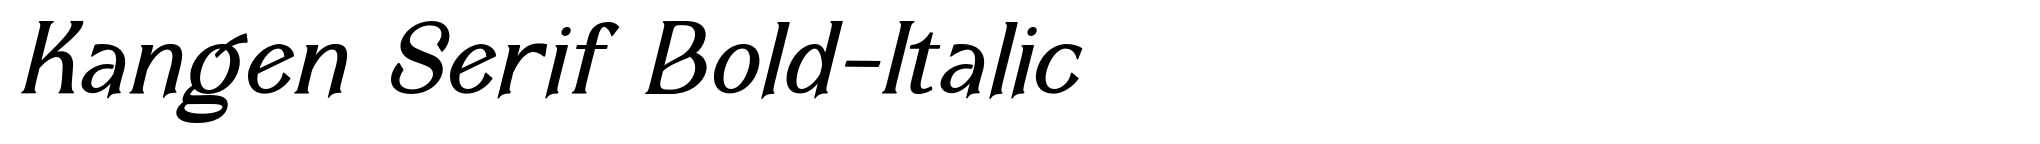 Kangen Serif Bold-Italic image